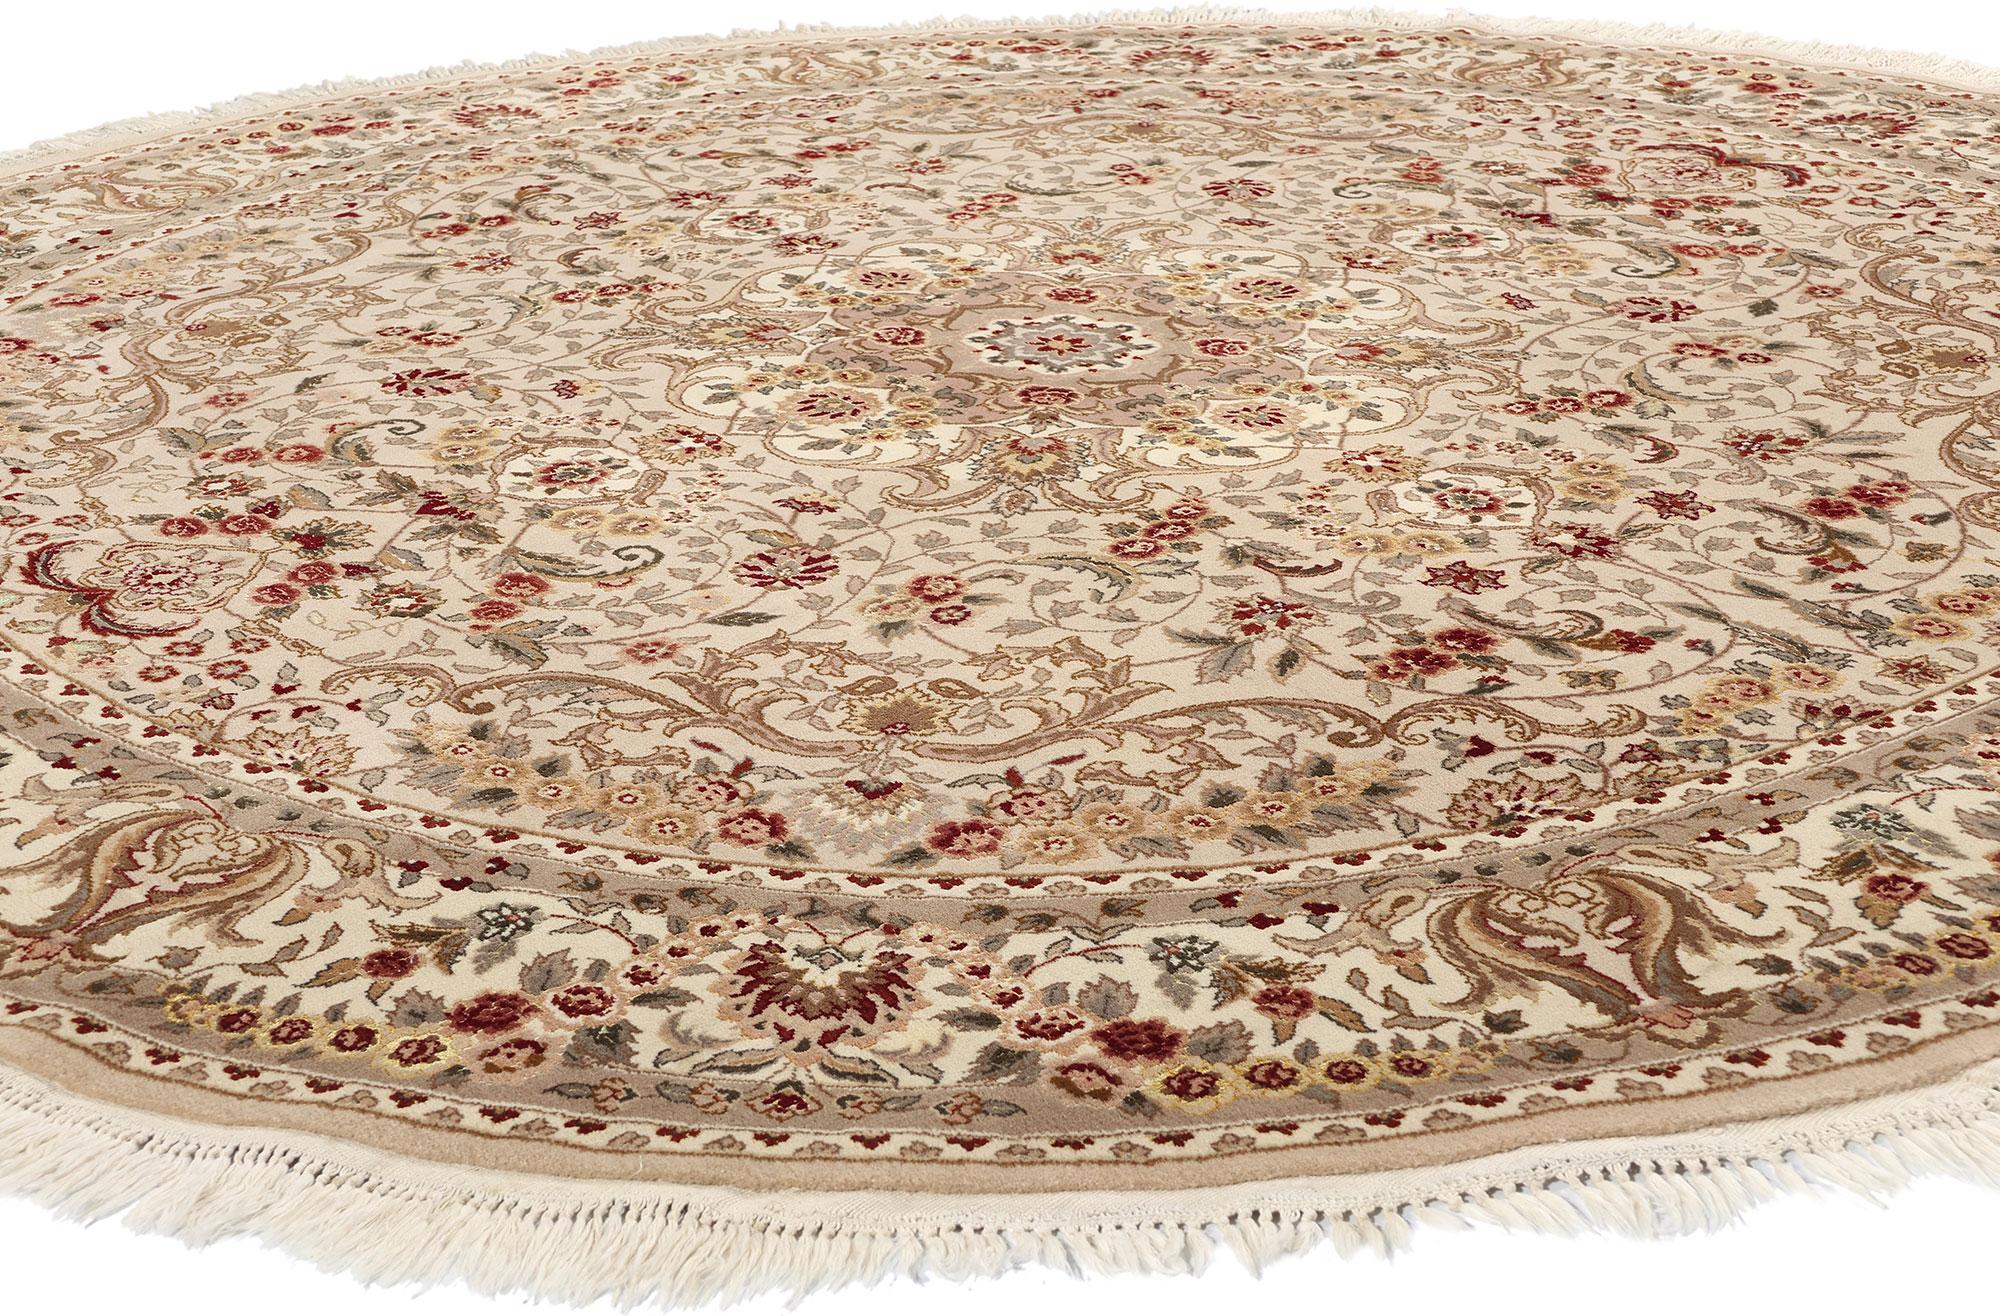 74981 Vintage Chinese Tabriz Wool & Silk Round Area Rug, 08'02 X 08'02. Les tapis ronds chinois Tabriz, fabriqués à partir d'un mélange de laine et de soie, offrent un mariage harmonieux de texture luxueuse et de brillance exquise. La laine assure